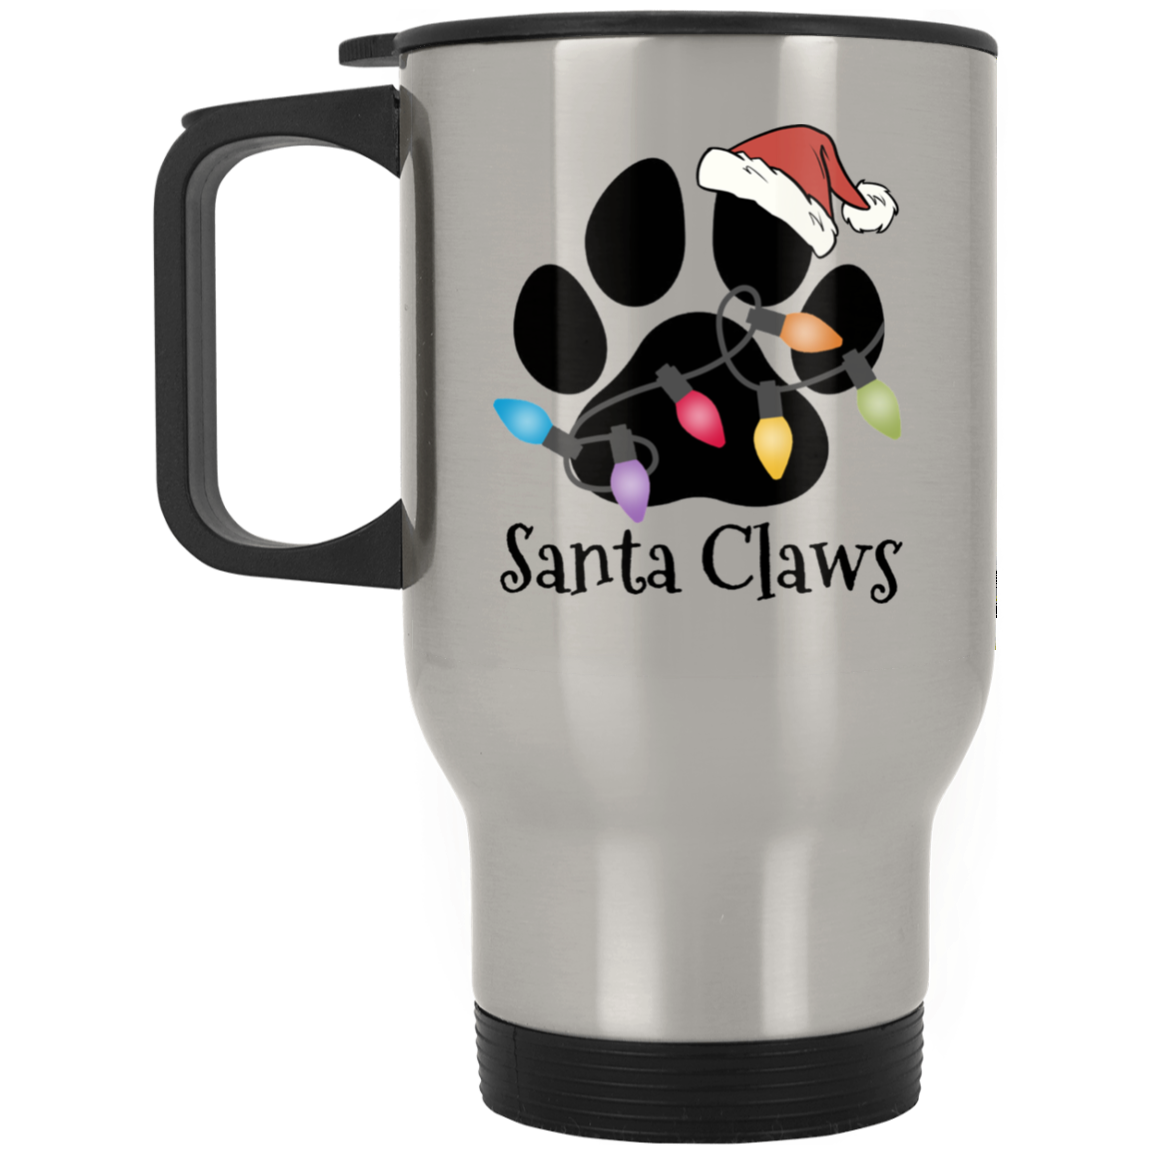 Santa Claws - Mug